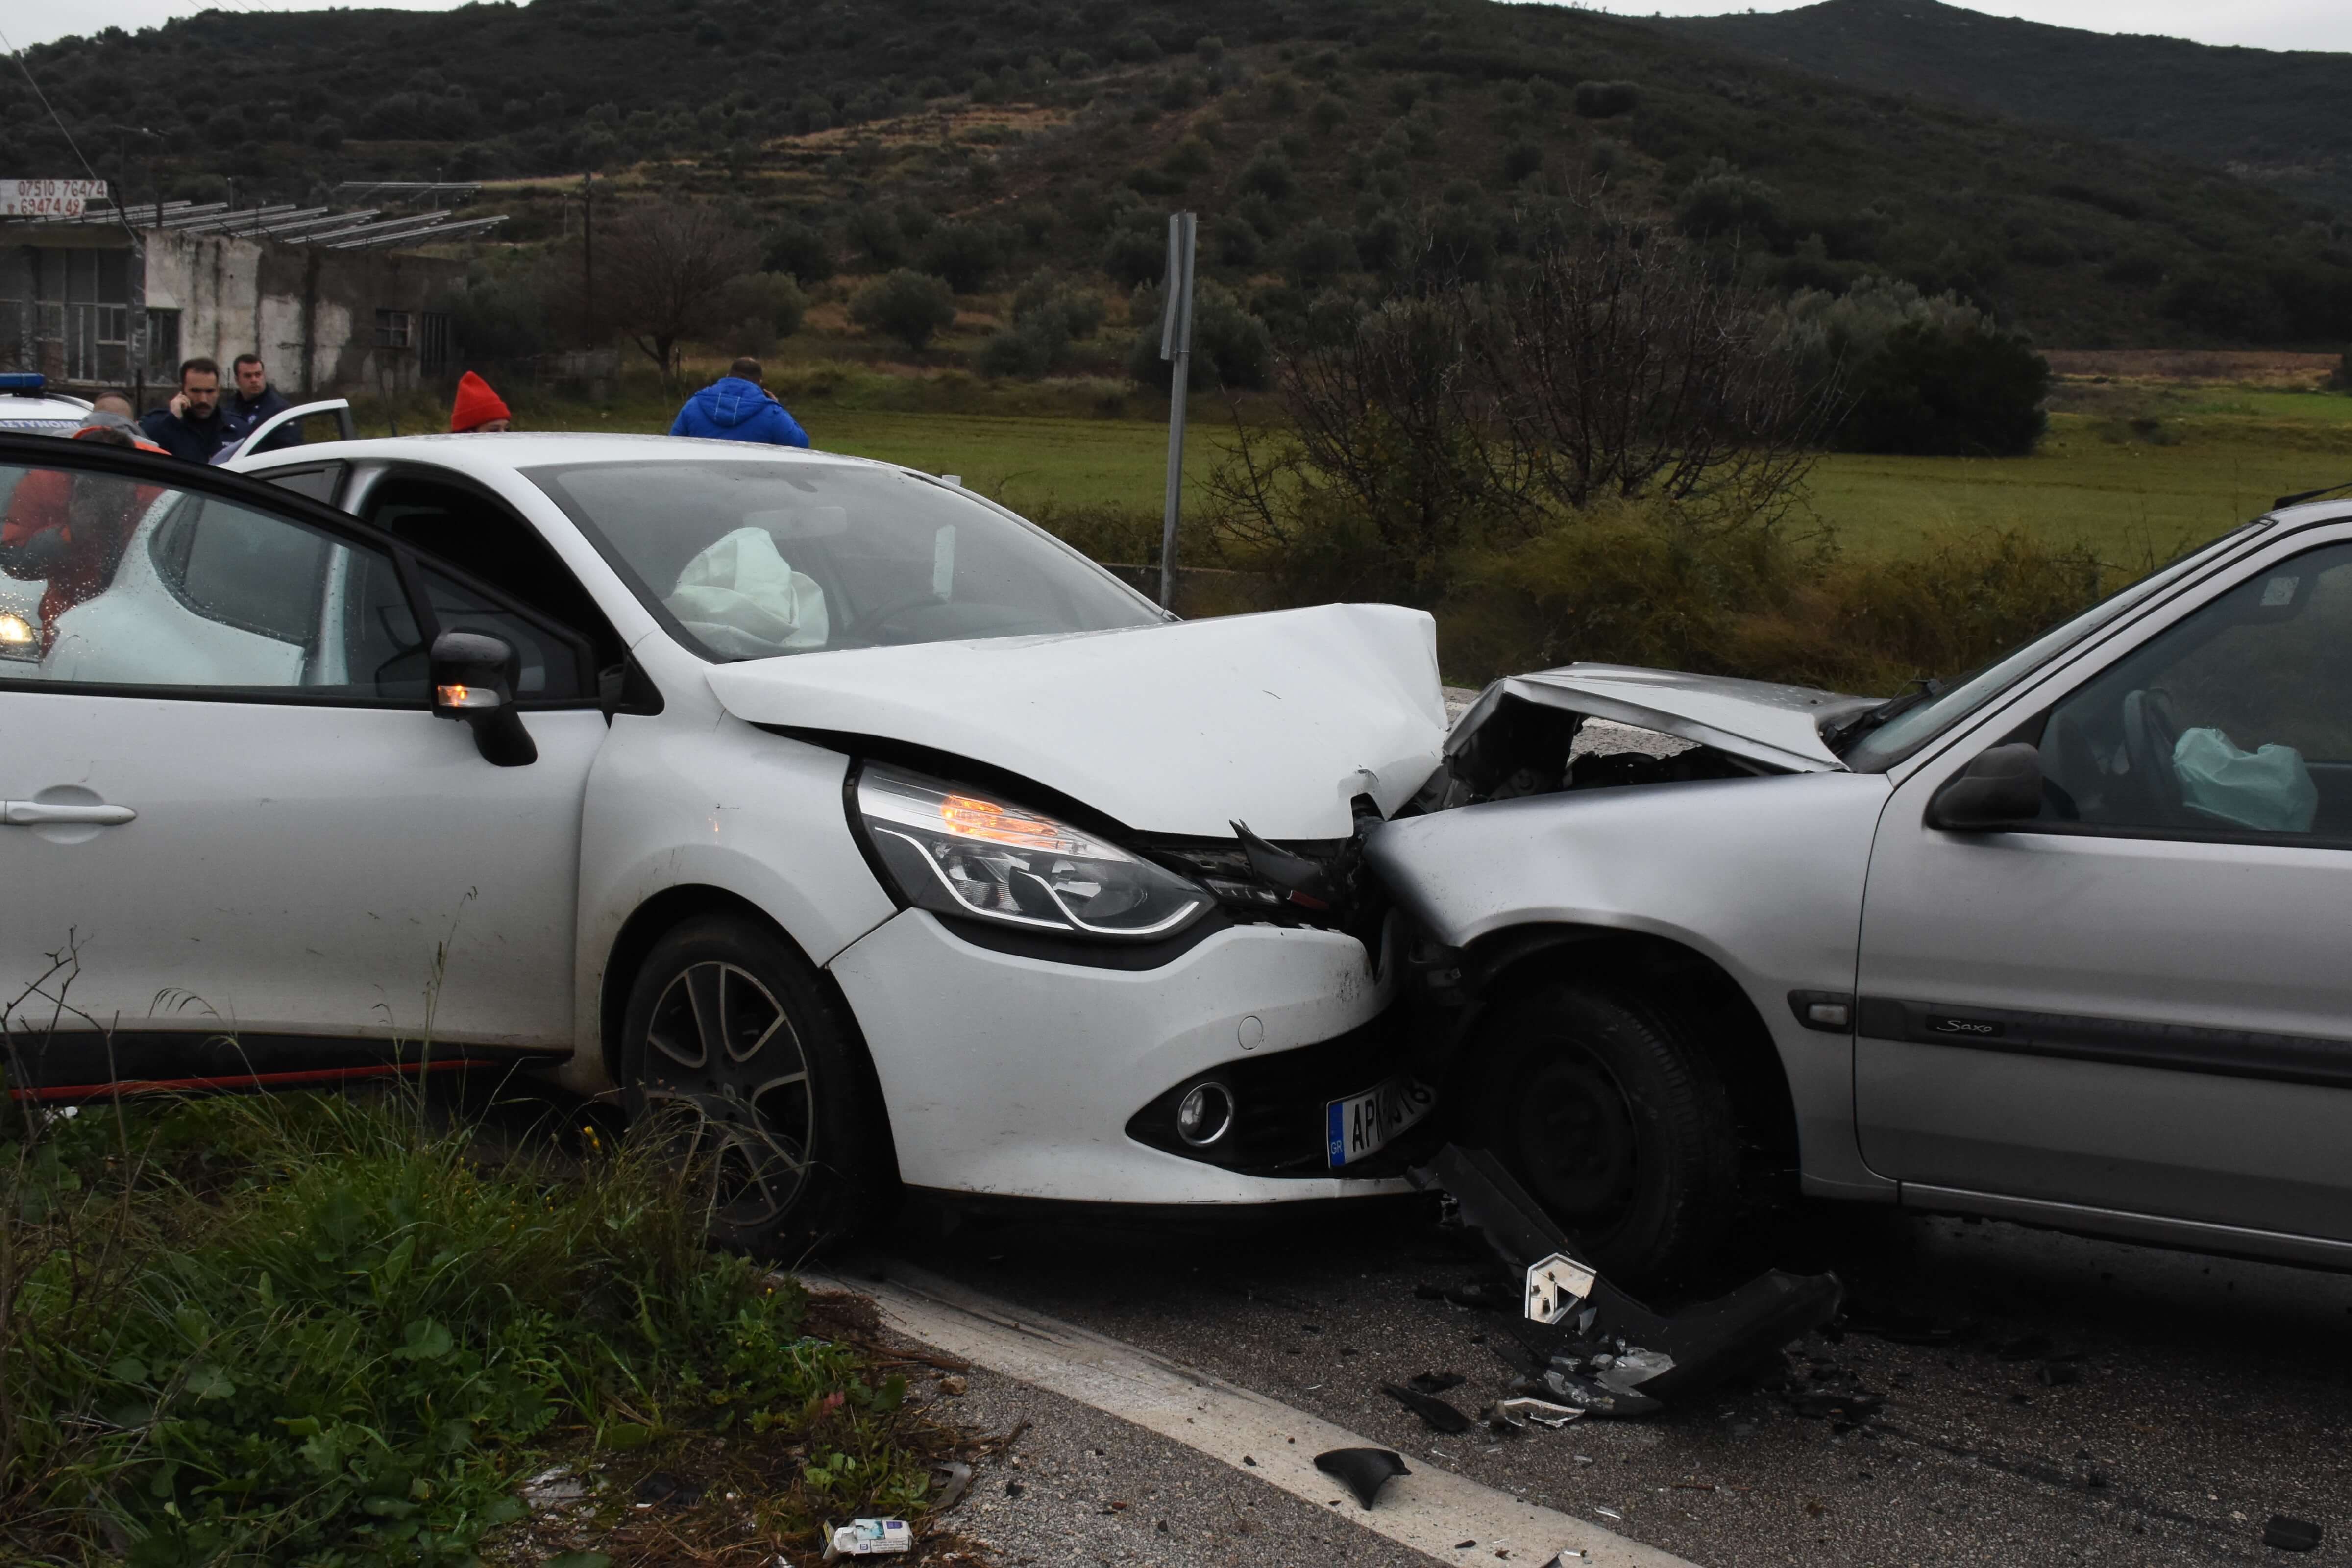 Σέρρες: Τροχαίο δυστύχημα με δύο νεκρούς – Σκληρές εικόνες μετά τη σύγκρουση των αυτοκινήτων!